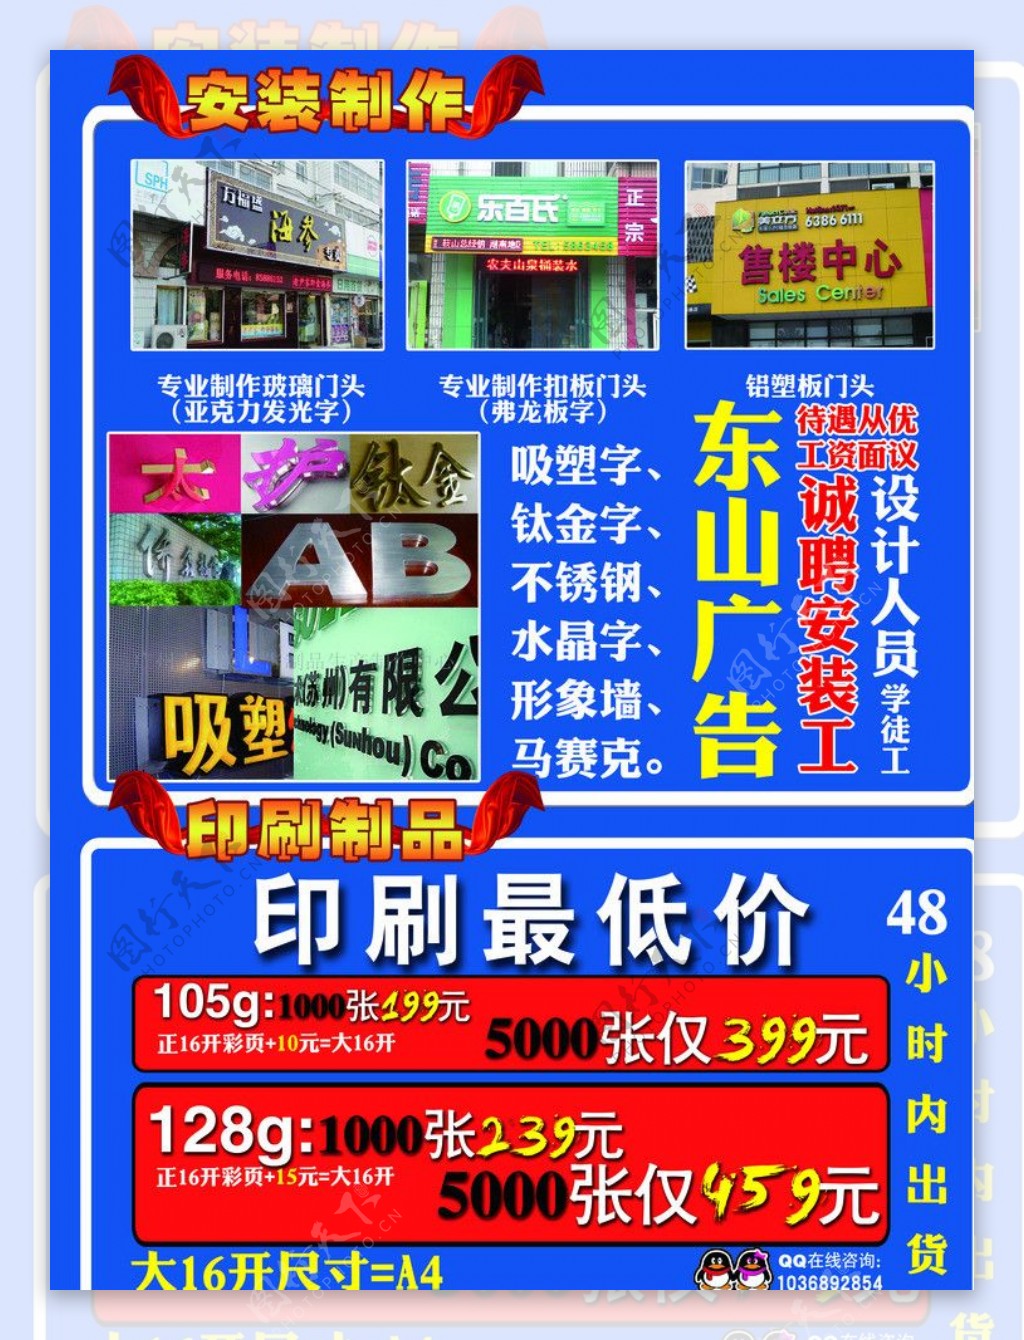 東山广告广告公司彩页图片